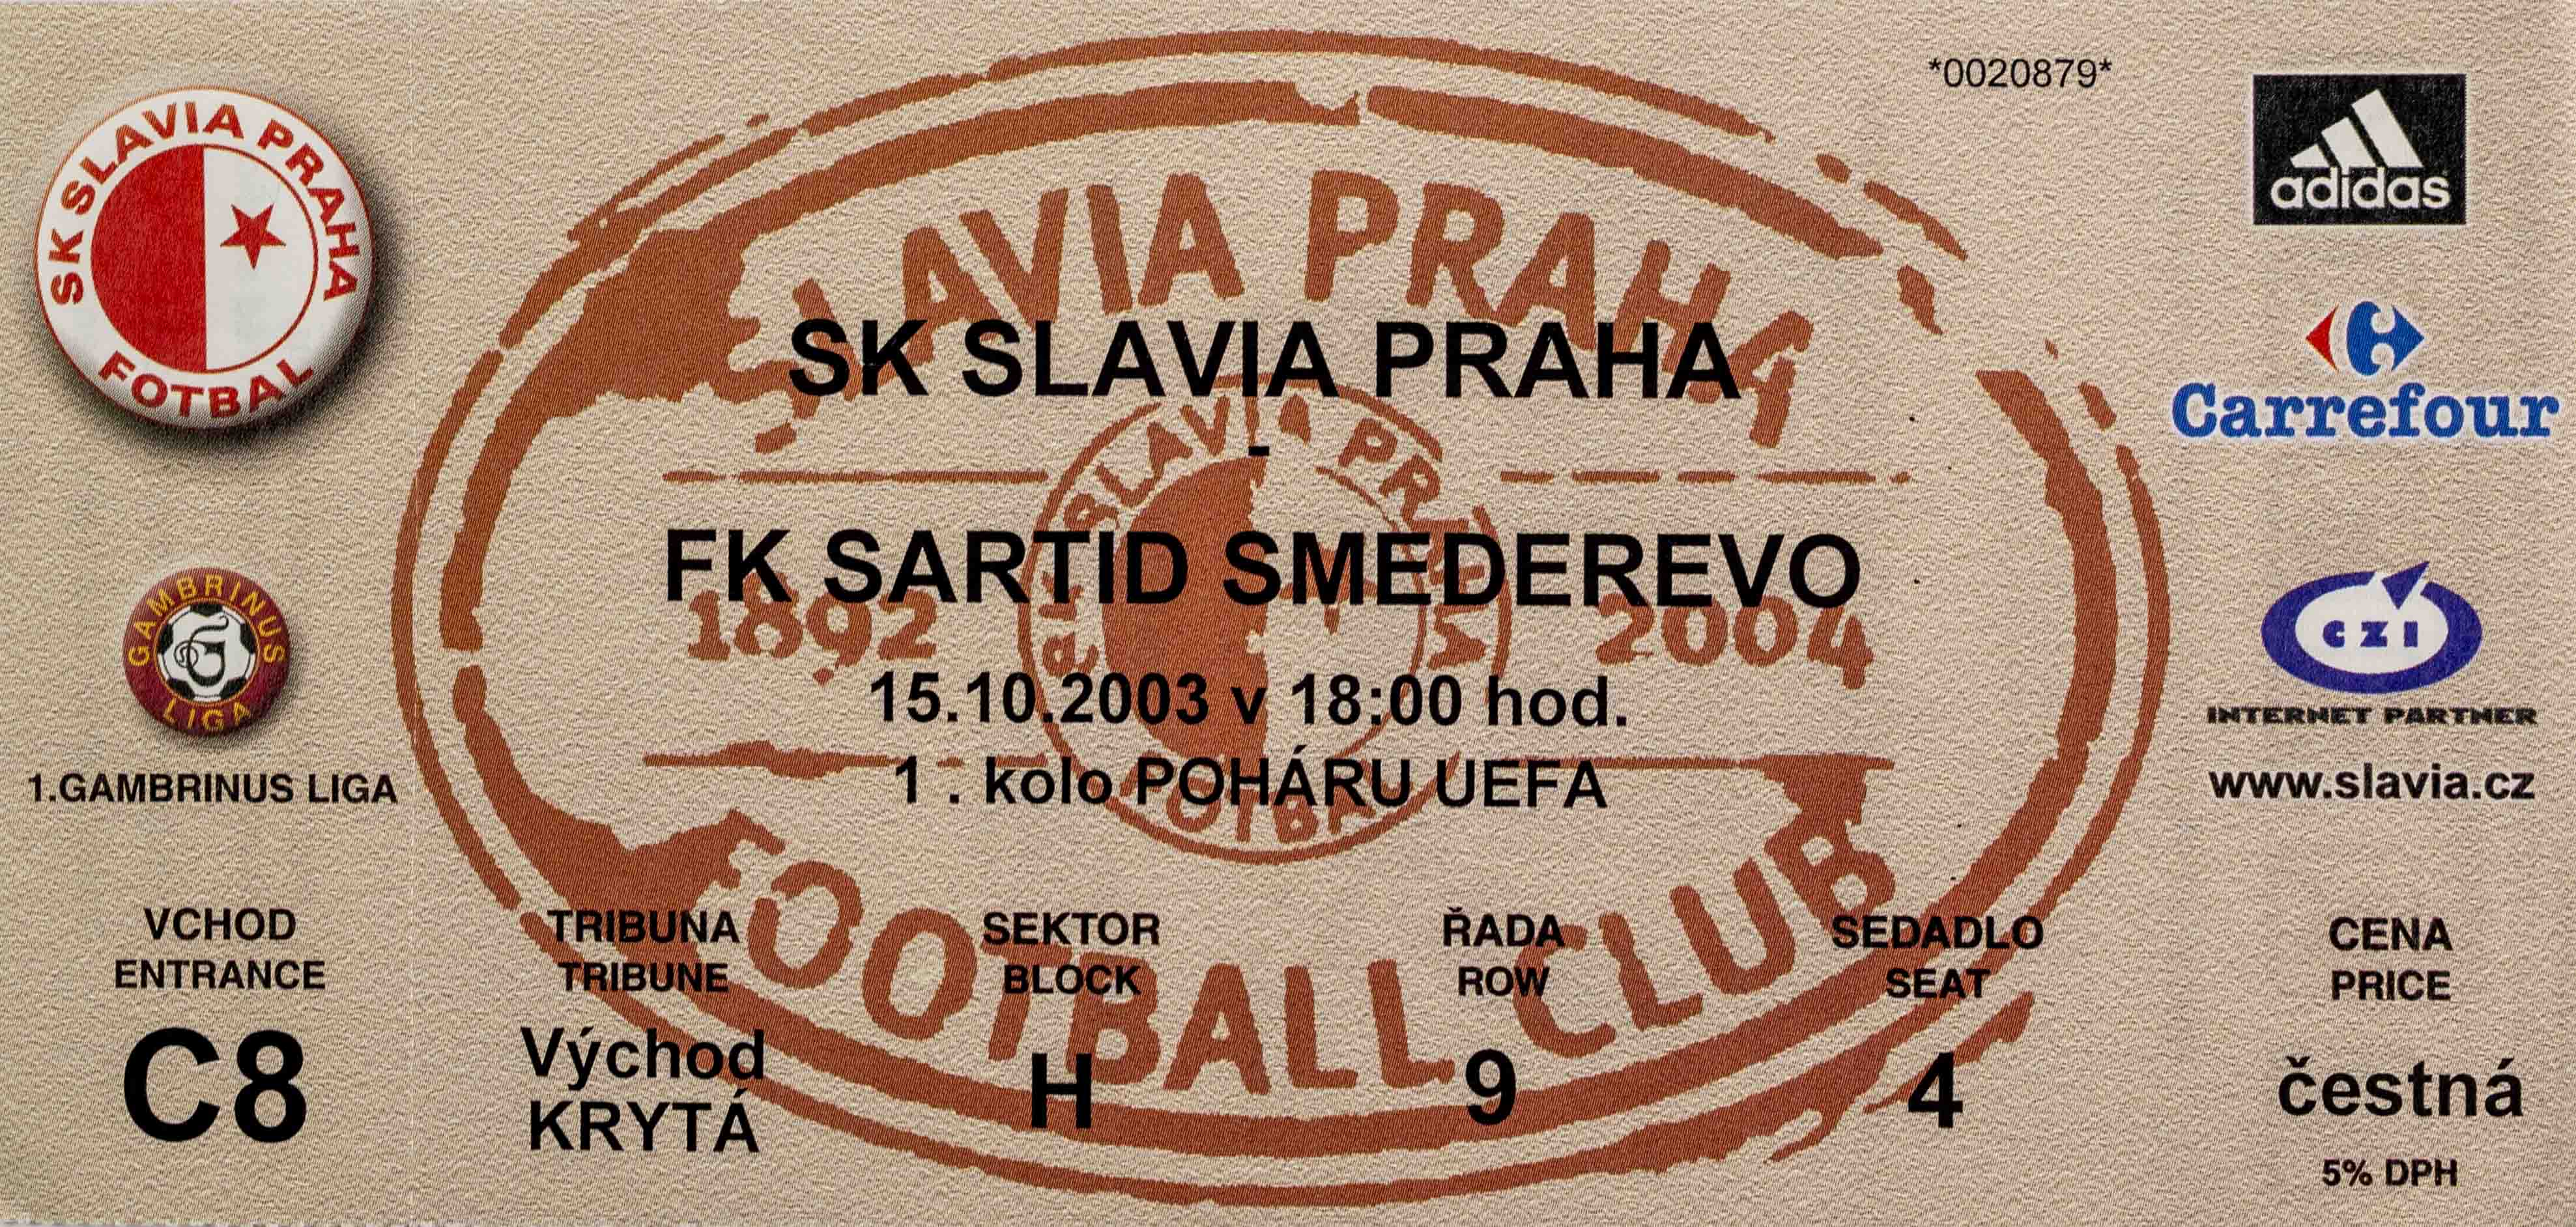 Vstupenka fotbal UEFA, SK Slavia Praha v. FK Sartid Smederevo, 2003